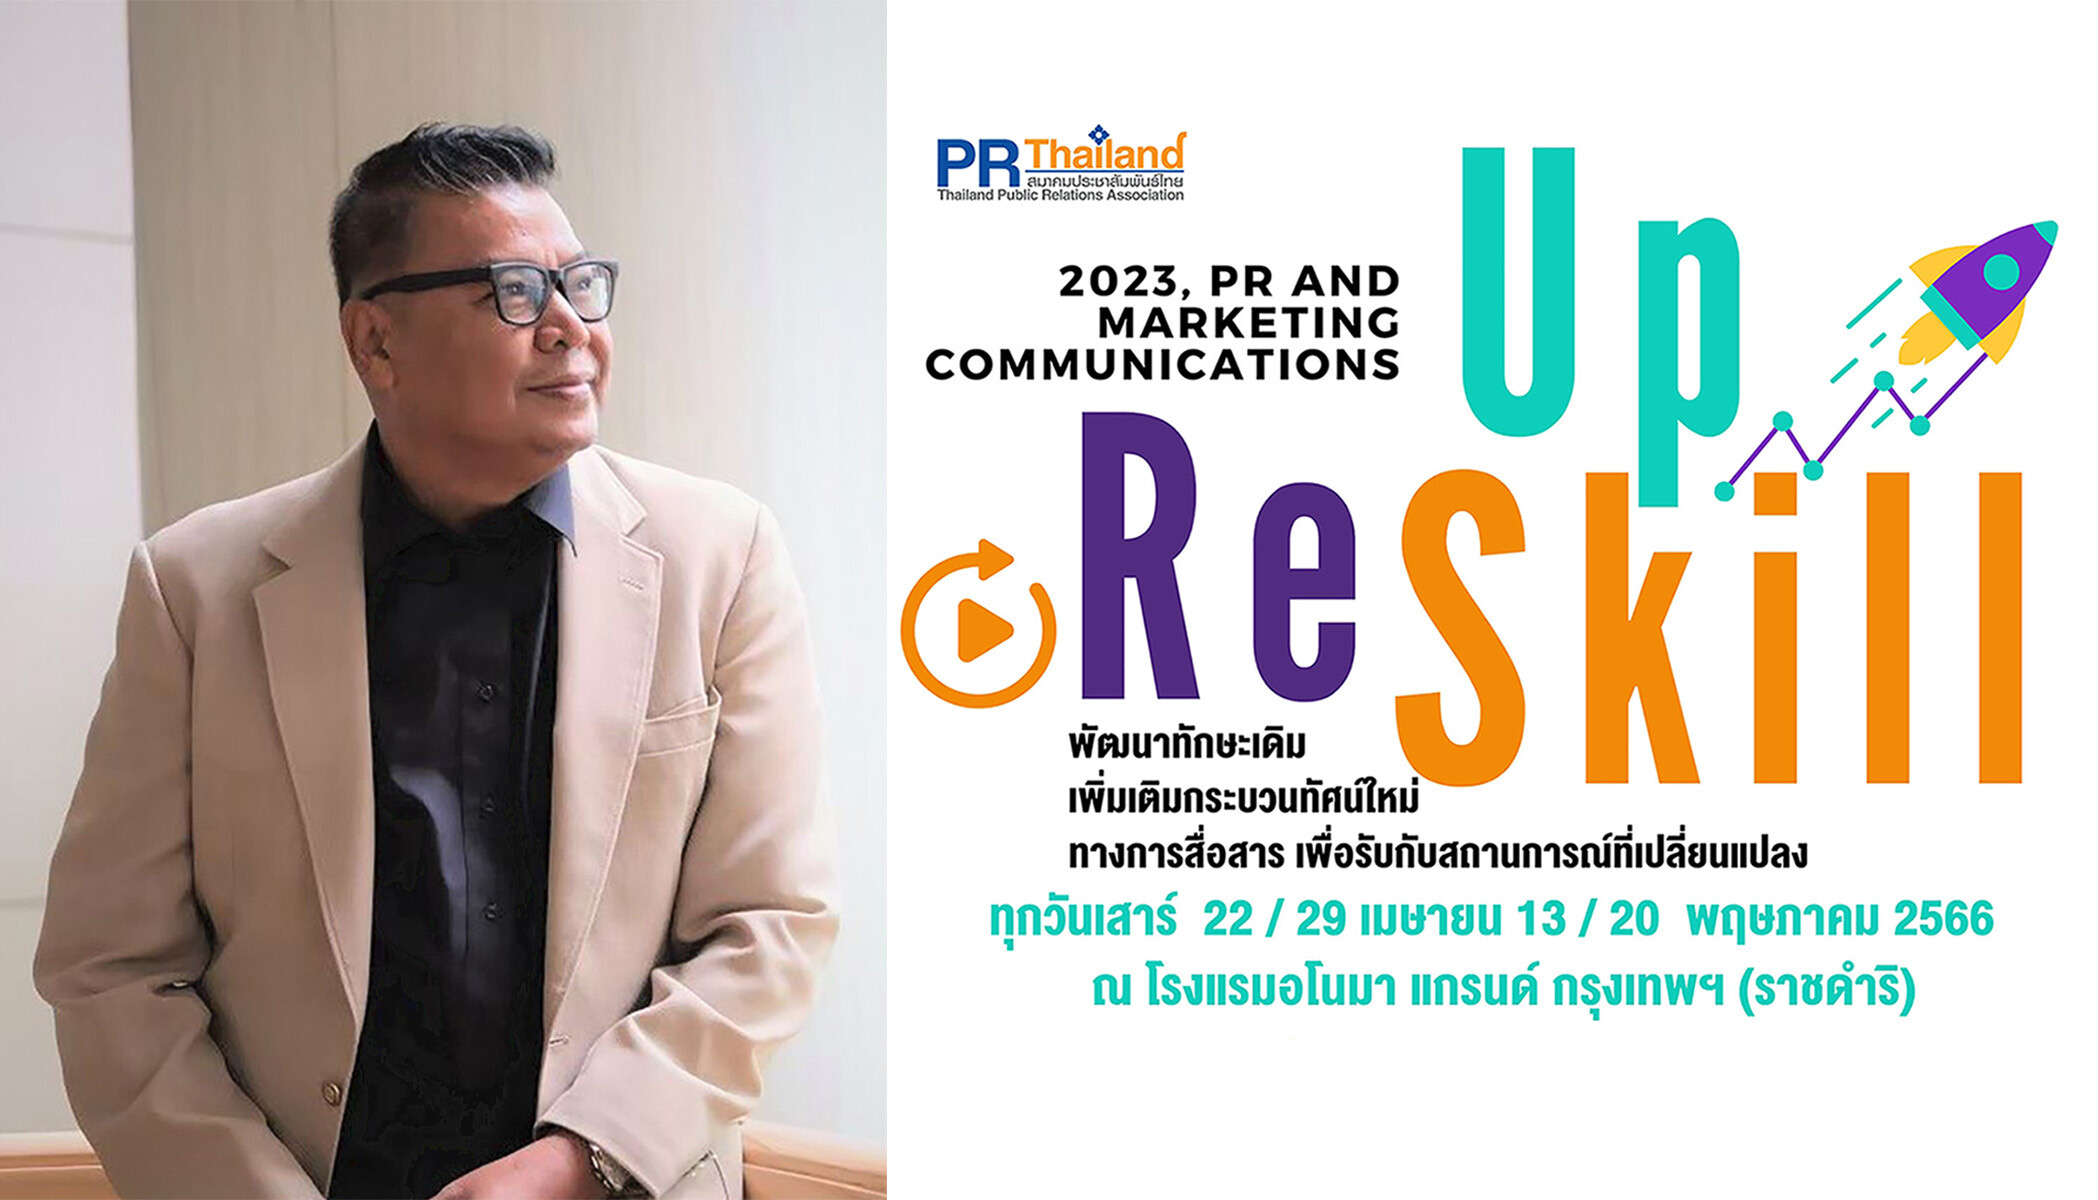 สมาคมประชาสัมพันธ์ไทย เปิดหลักสูตรอบรมล่าสุด Up-skill &amp; Re-skill ด้าน PR แบรนด์ และสื่อสารการตลาด ติวเข้มเน้นใช้งานจริง และขยายเครือข่าย PR Matching